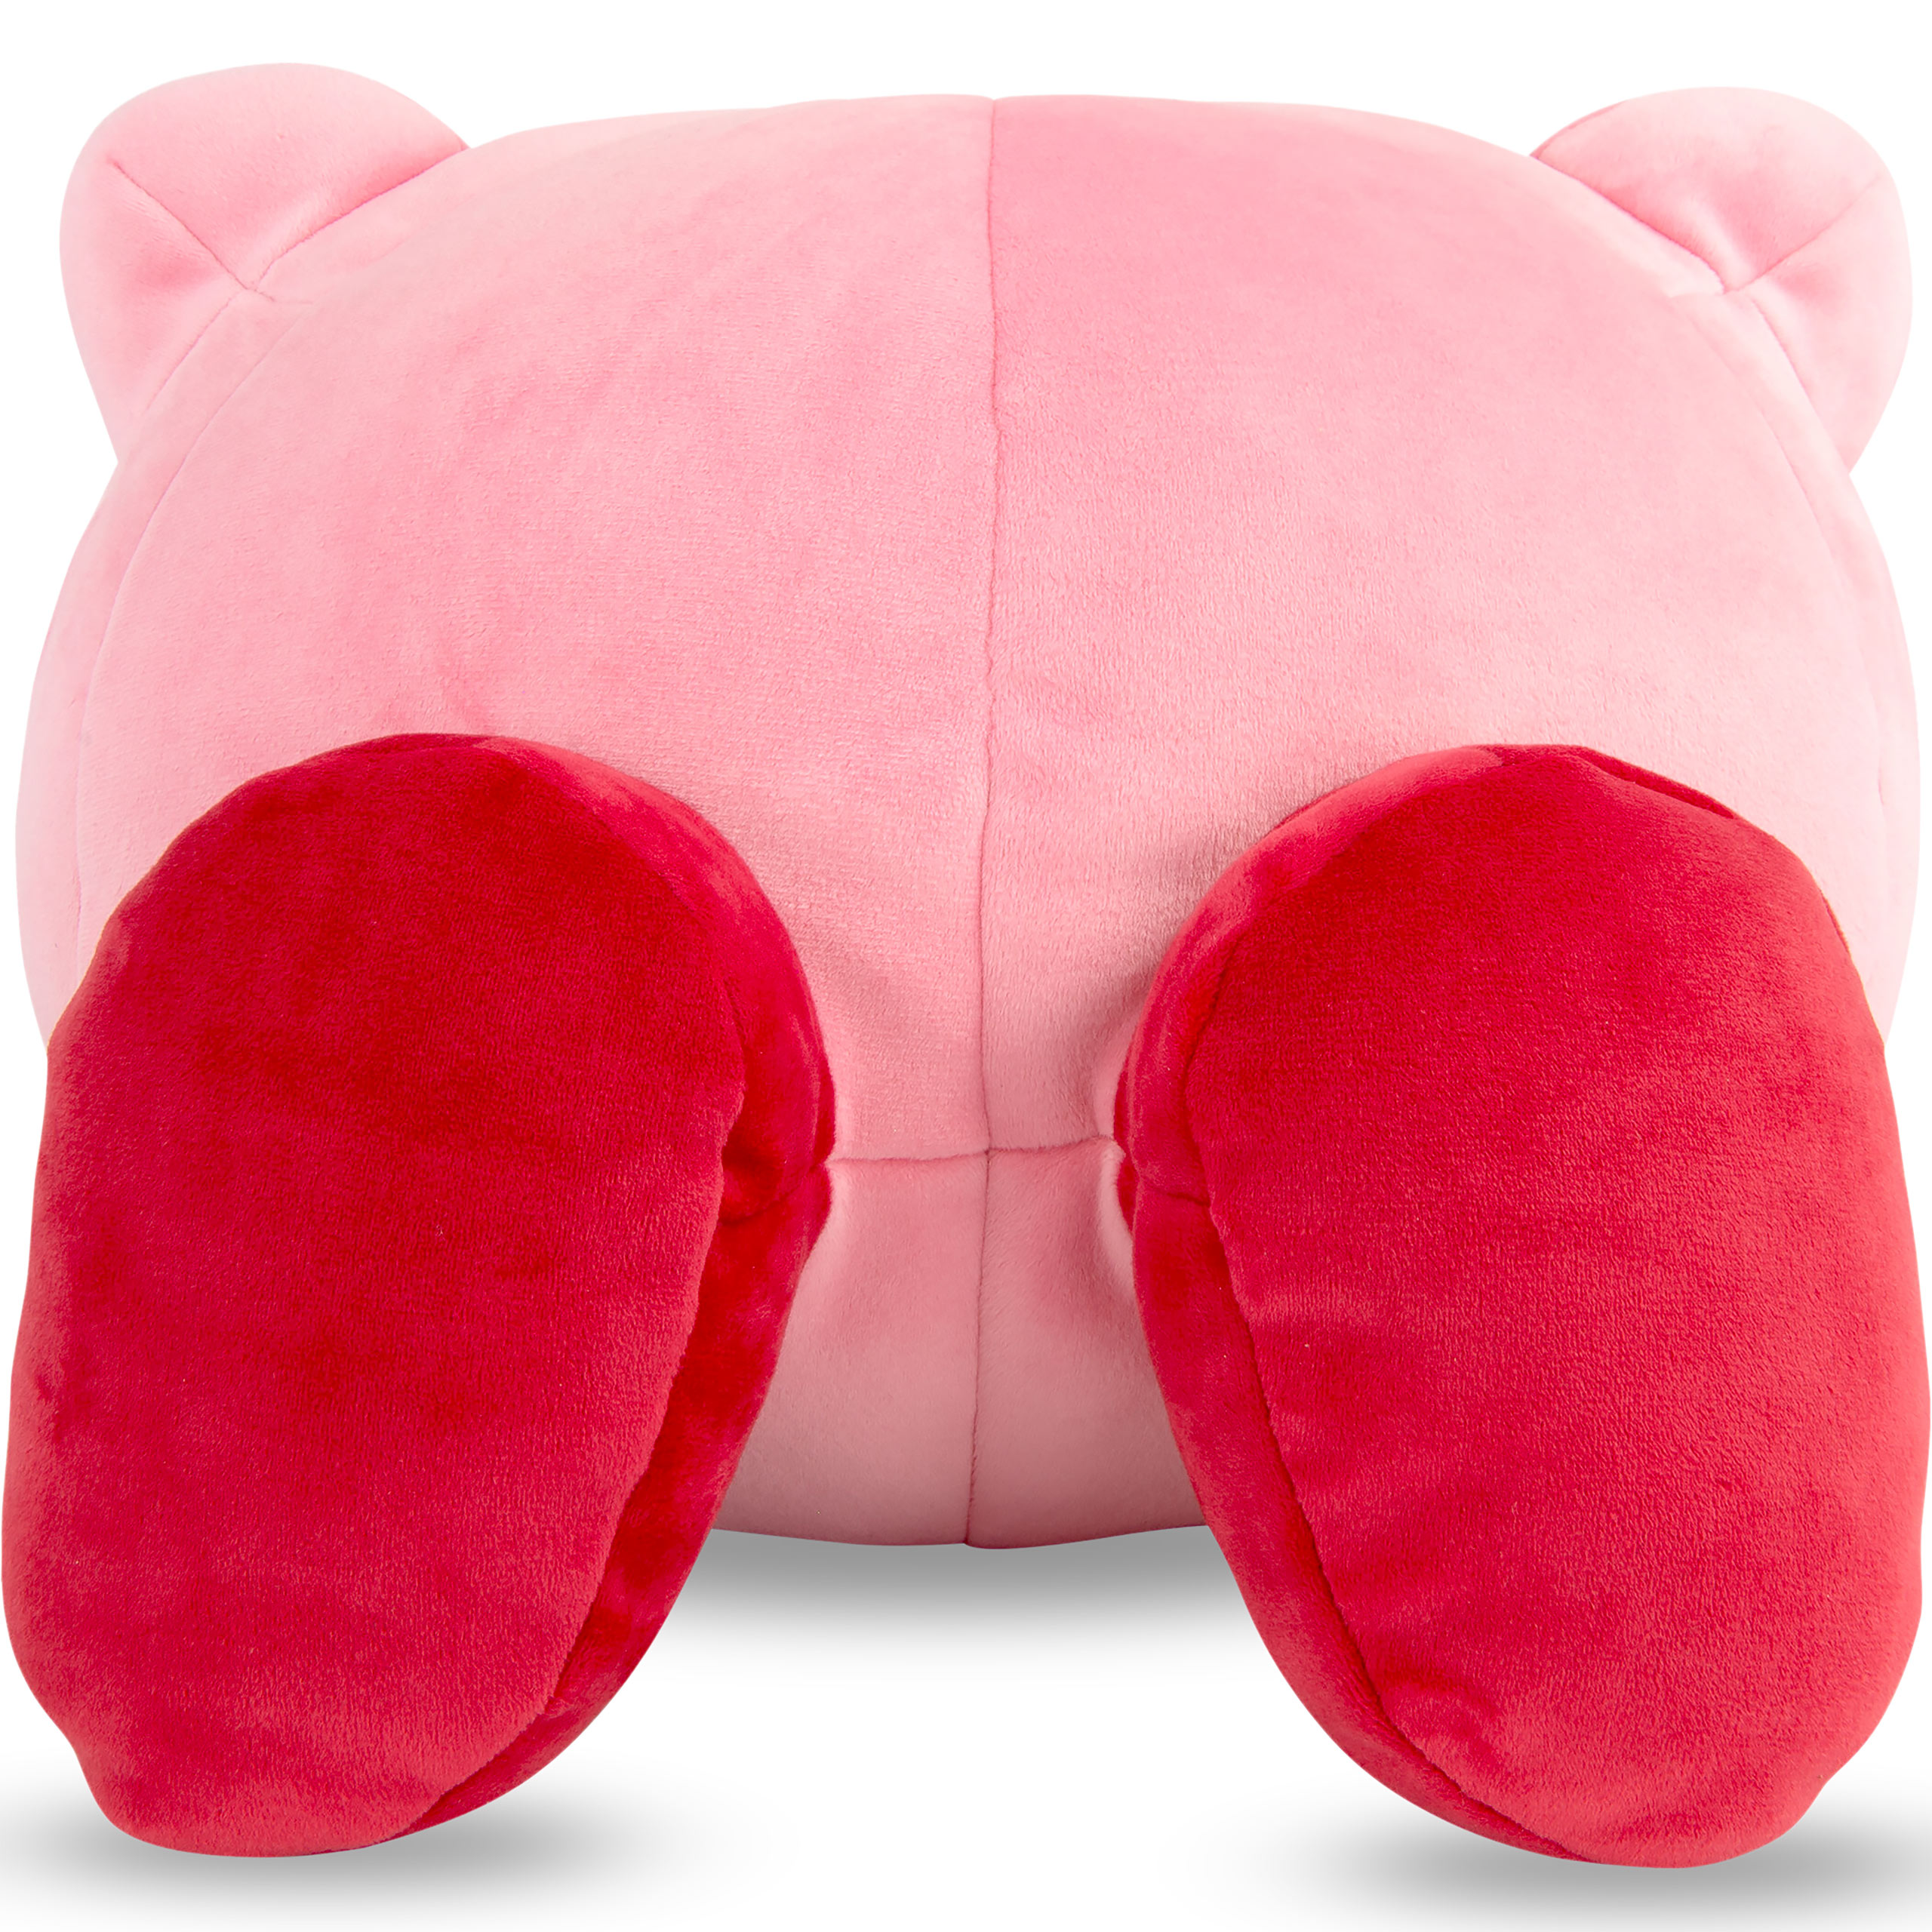 Kirby - Mega Plush Figure